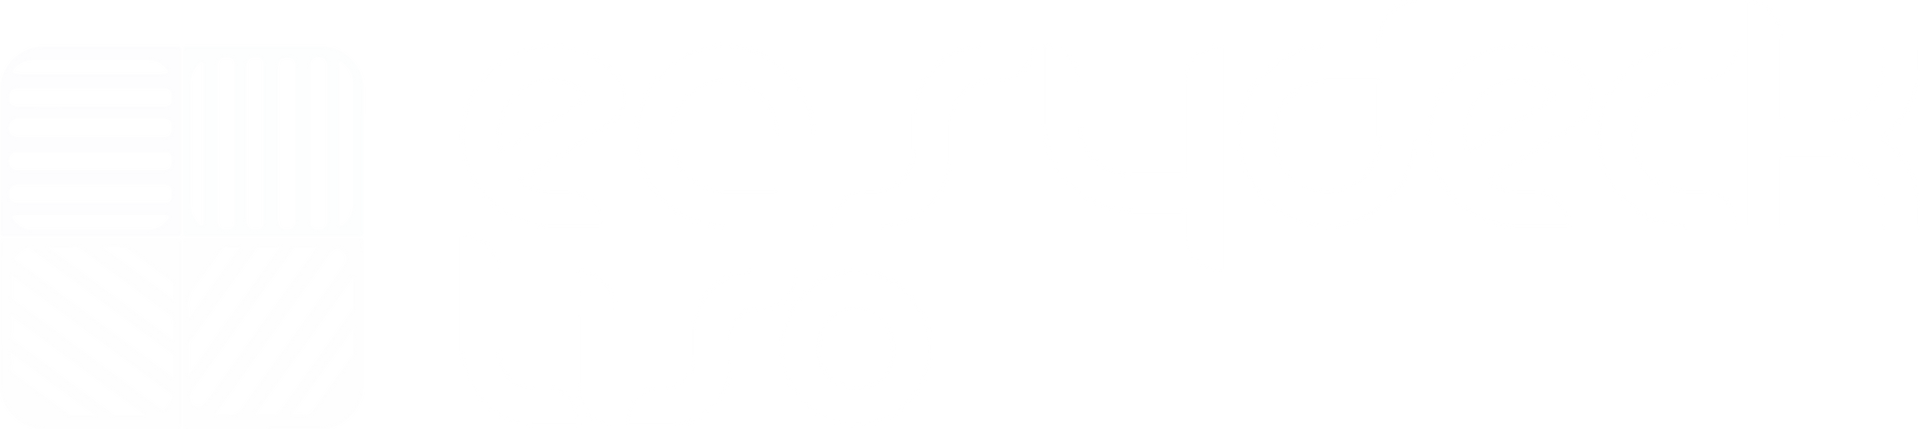 Logo en blanco de easydeck® liso para gimnasios